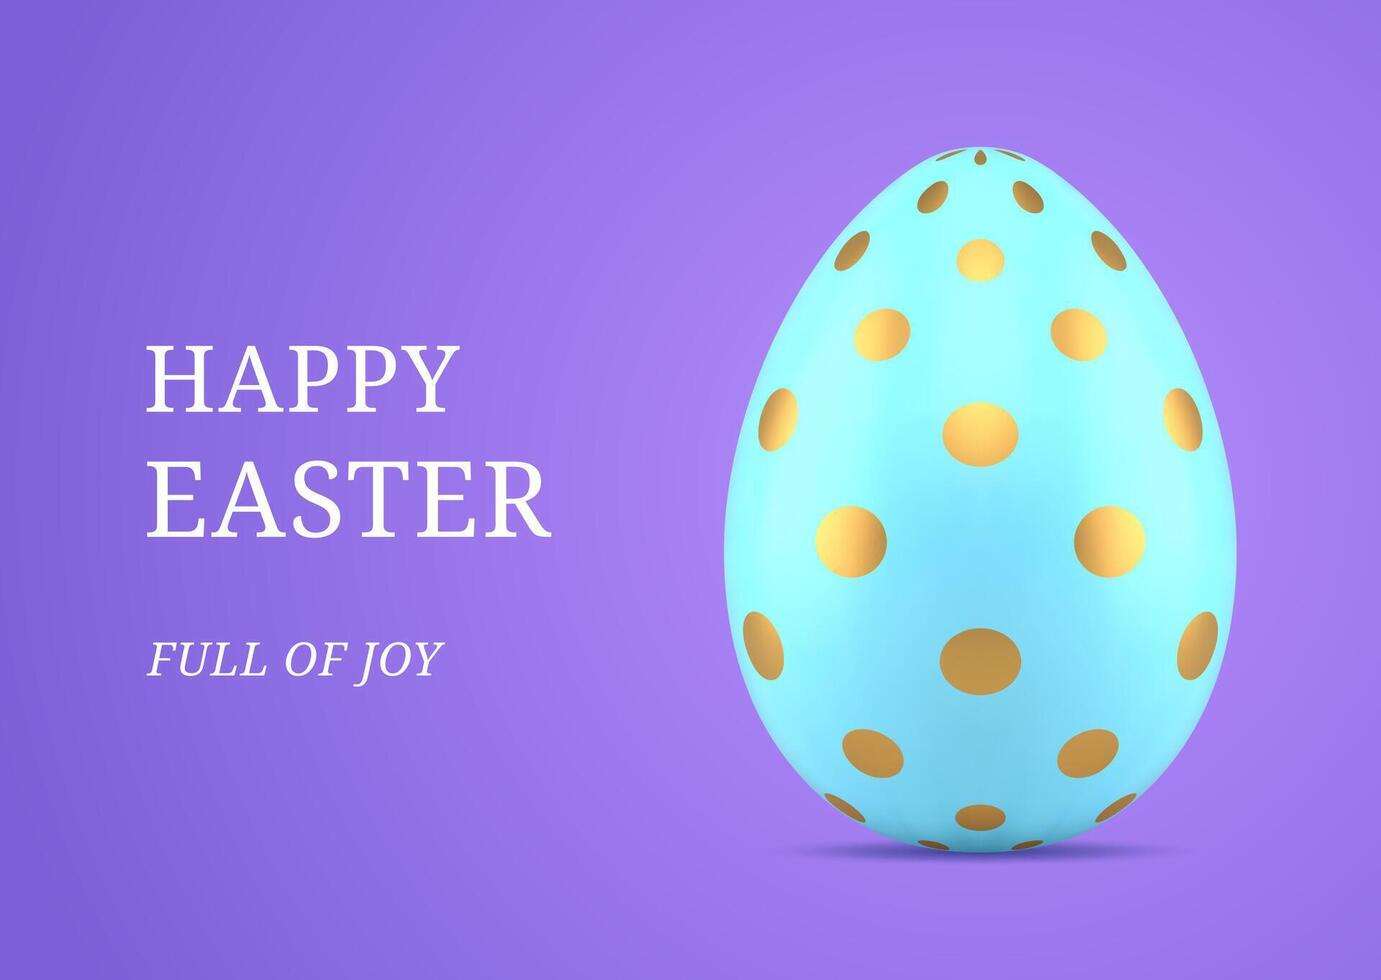 contento Pasqua blu dipinto pollo uovo d'oro polka punto 3d saluto carta design modello realistico illustrazione vettore